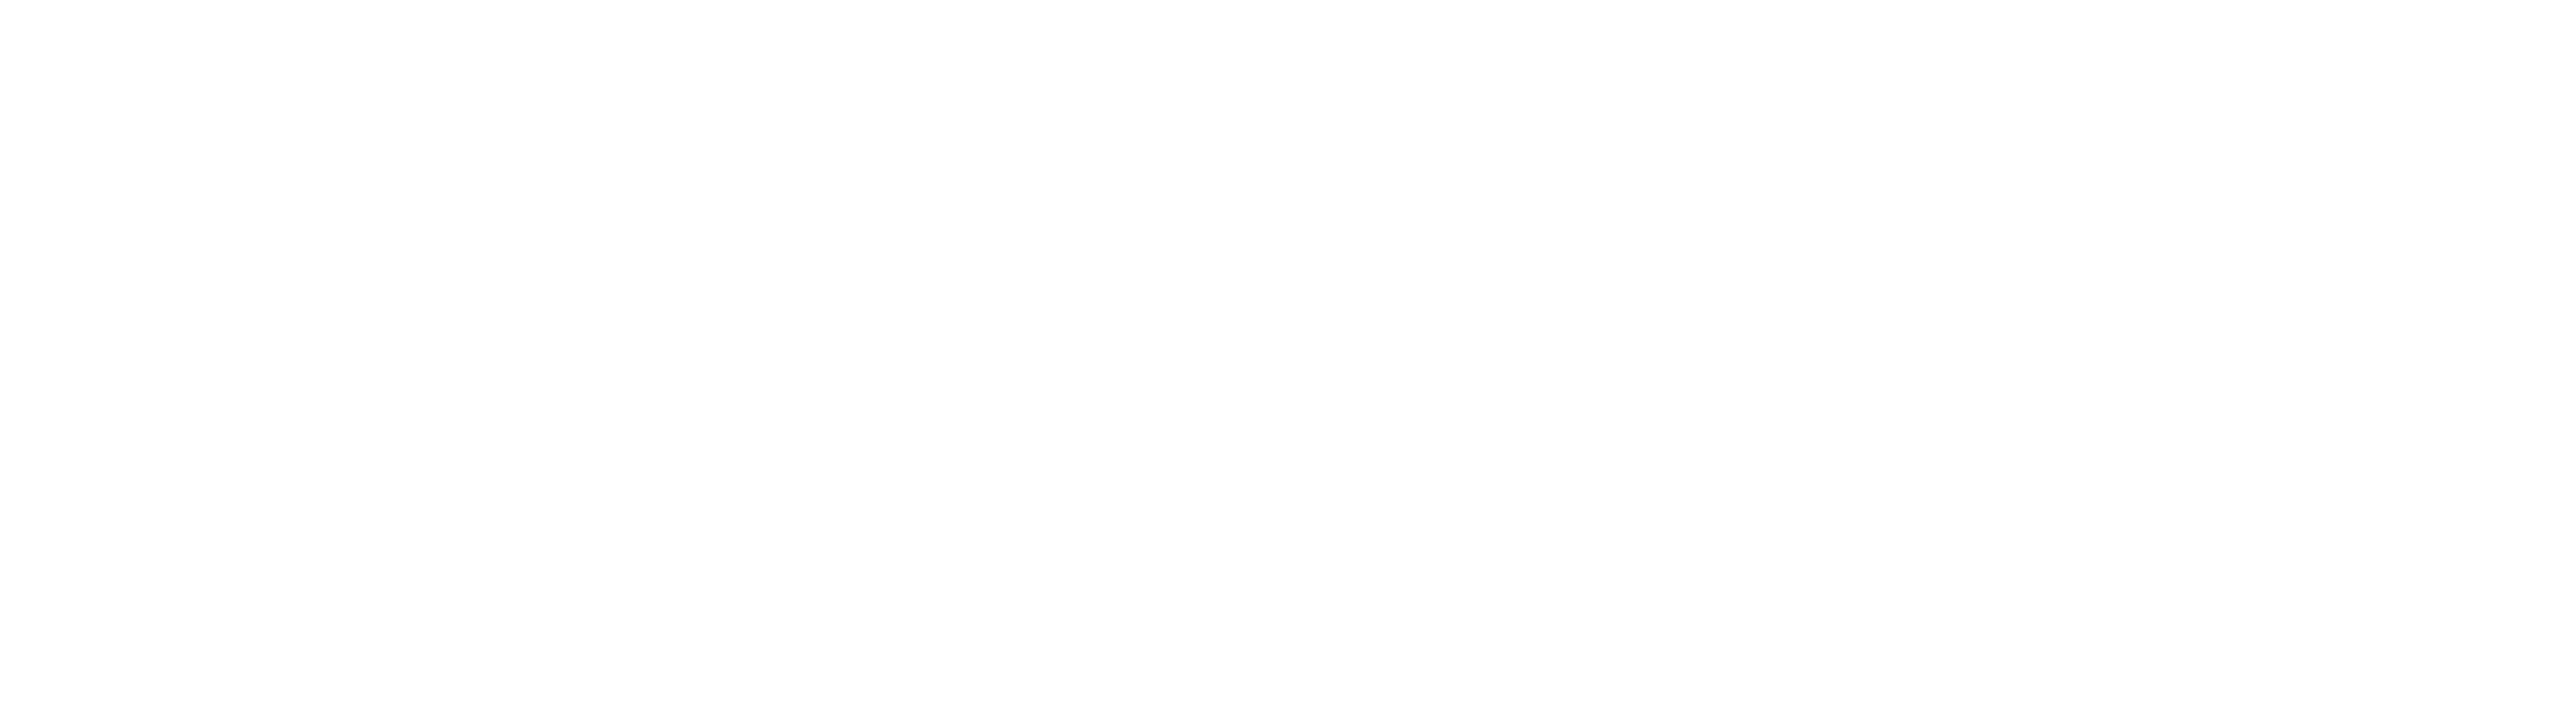 European Union NextGenerationEU